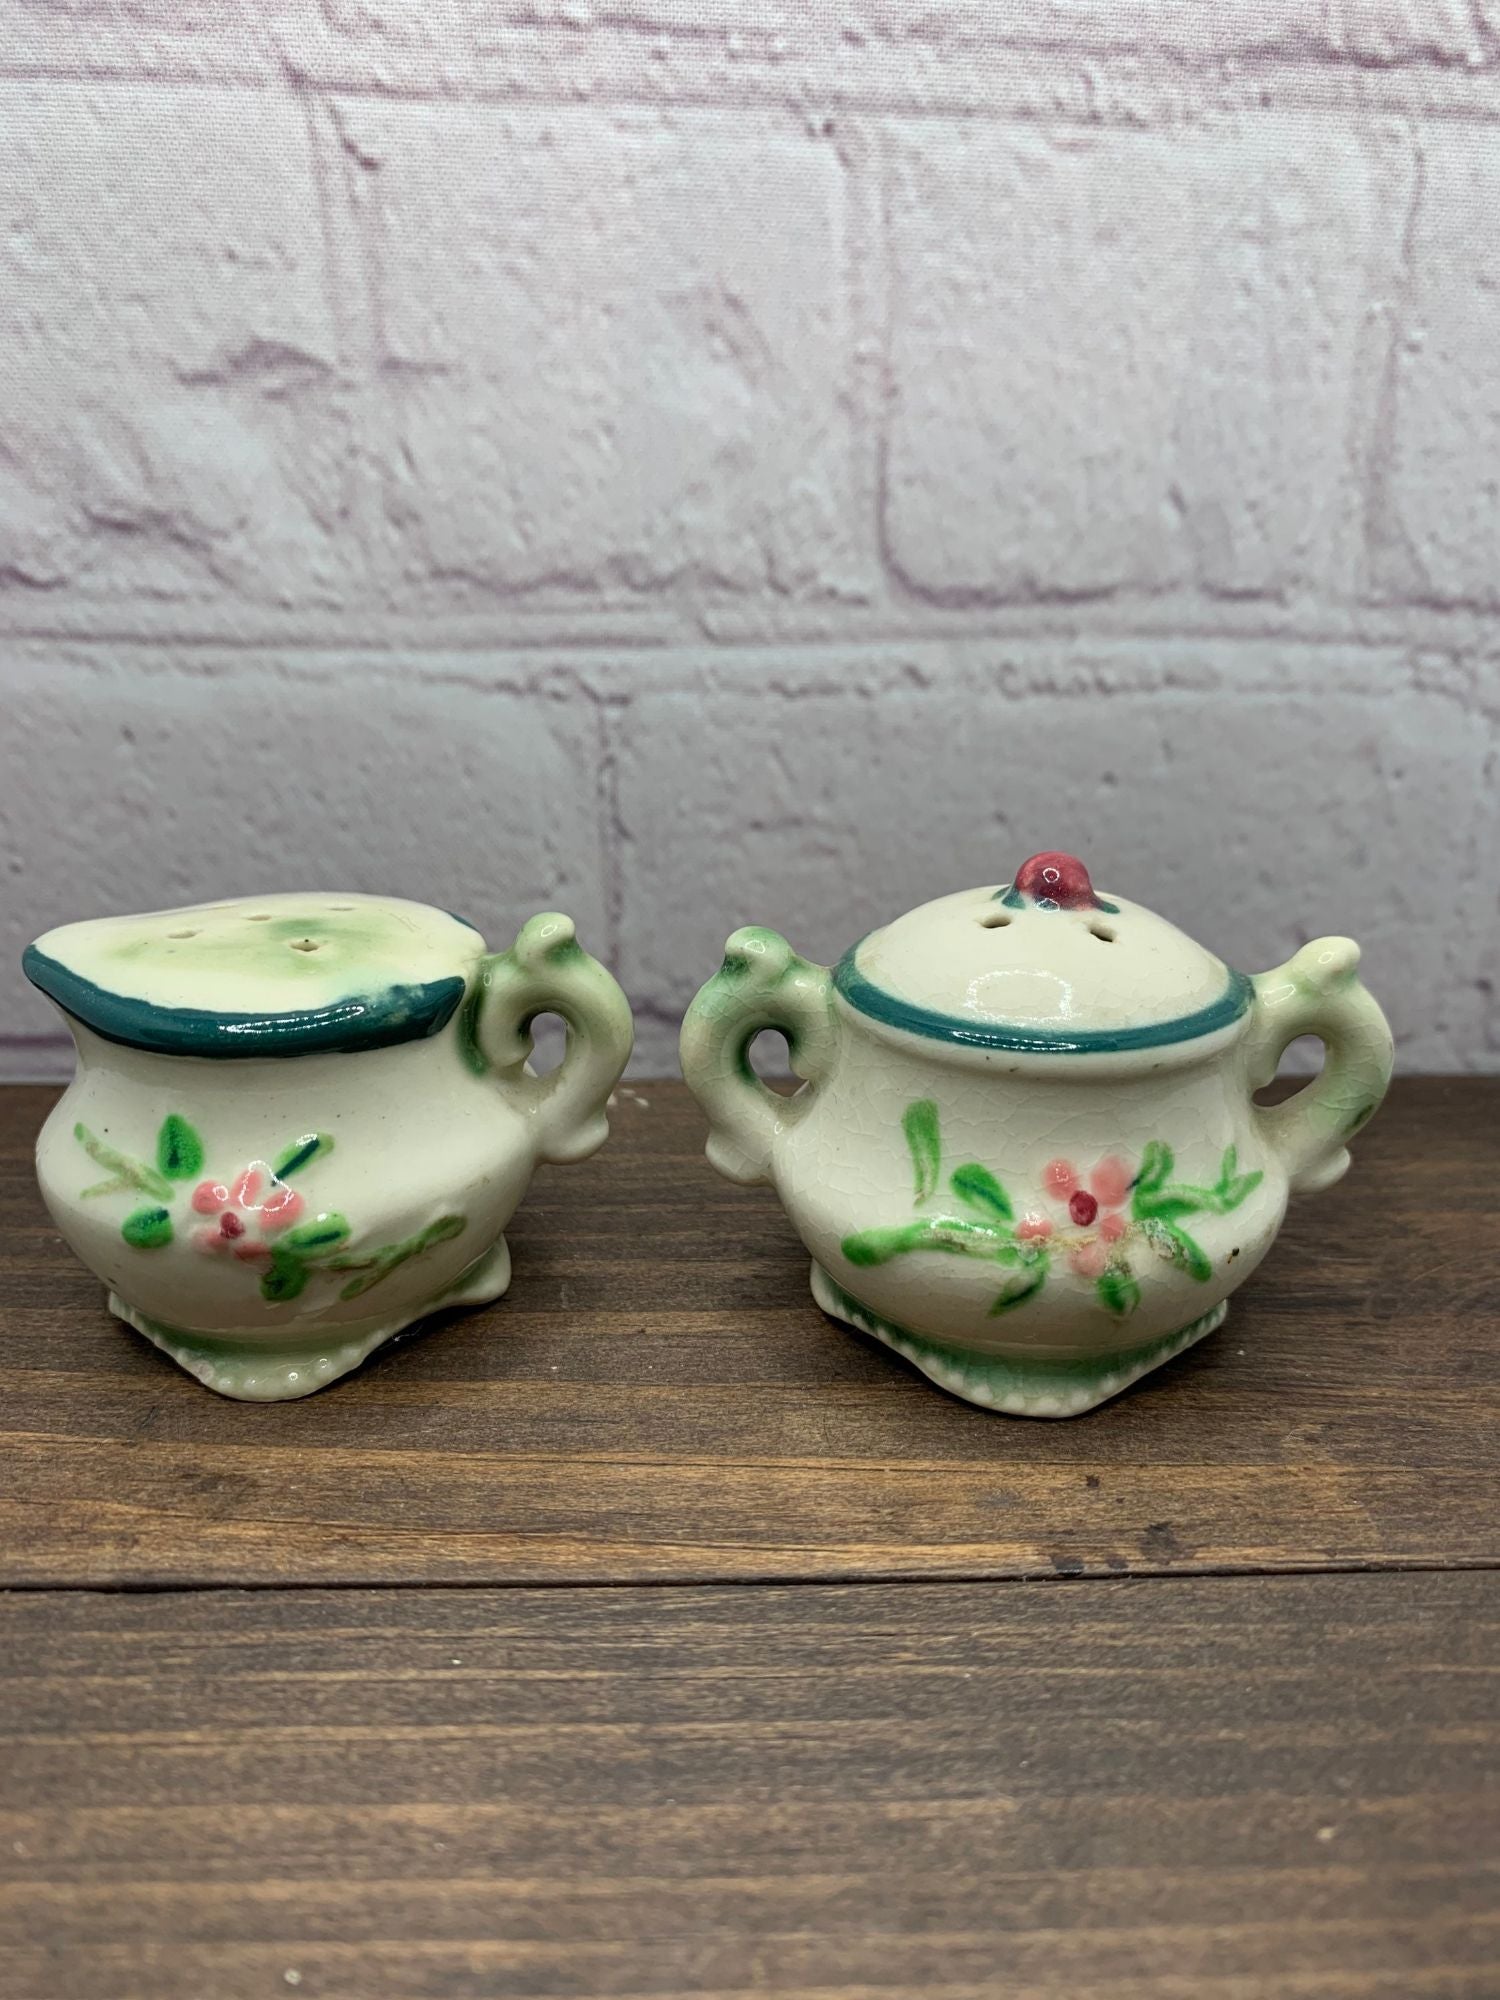 Vintage Creamer and Sugar Bowl Salt & Pepper Shakers, Floral Ceramic - Japan 1950s